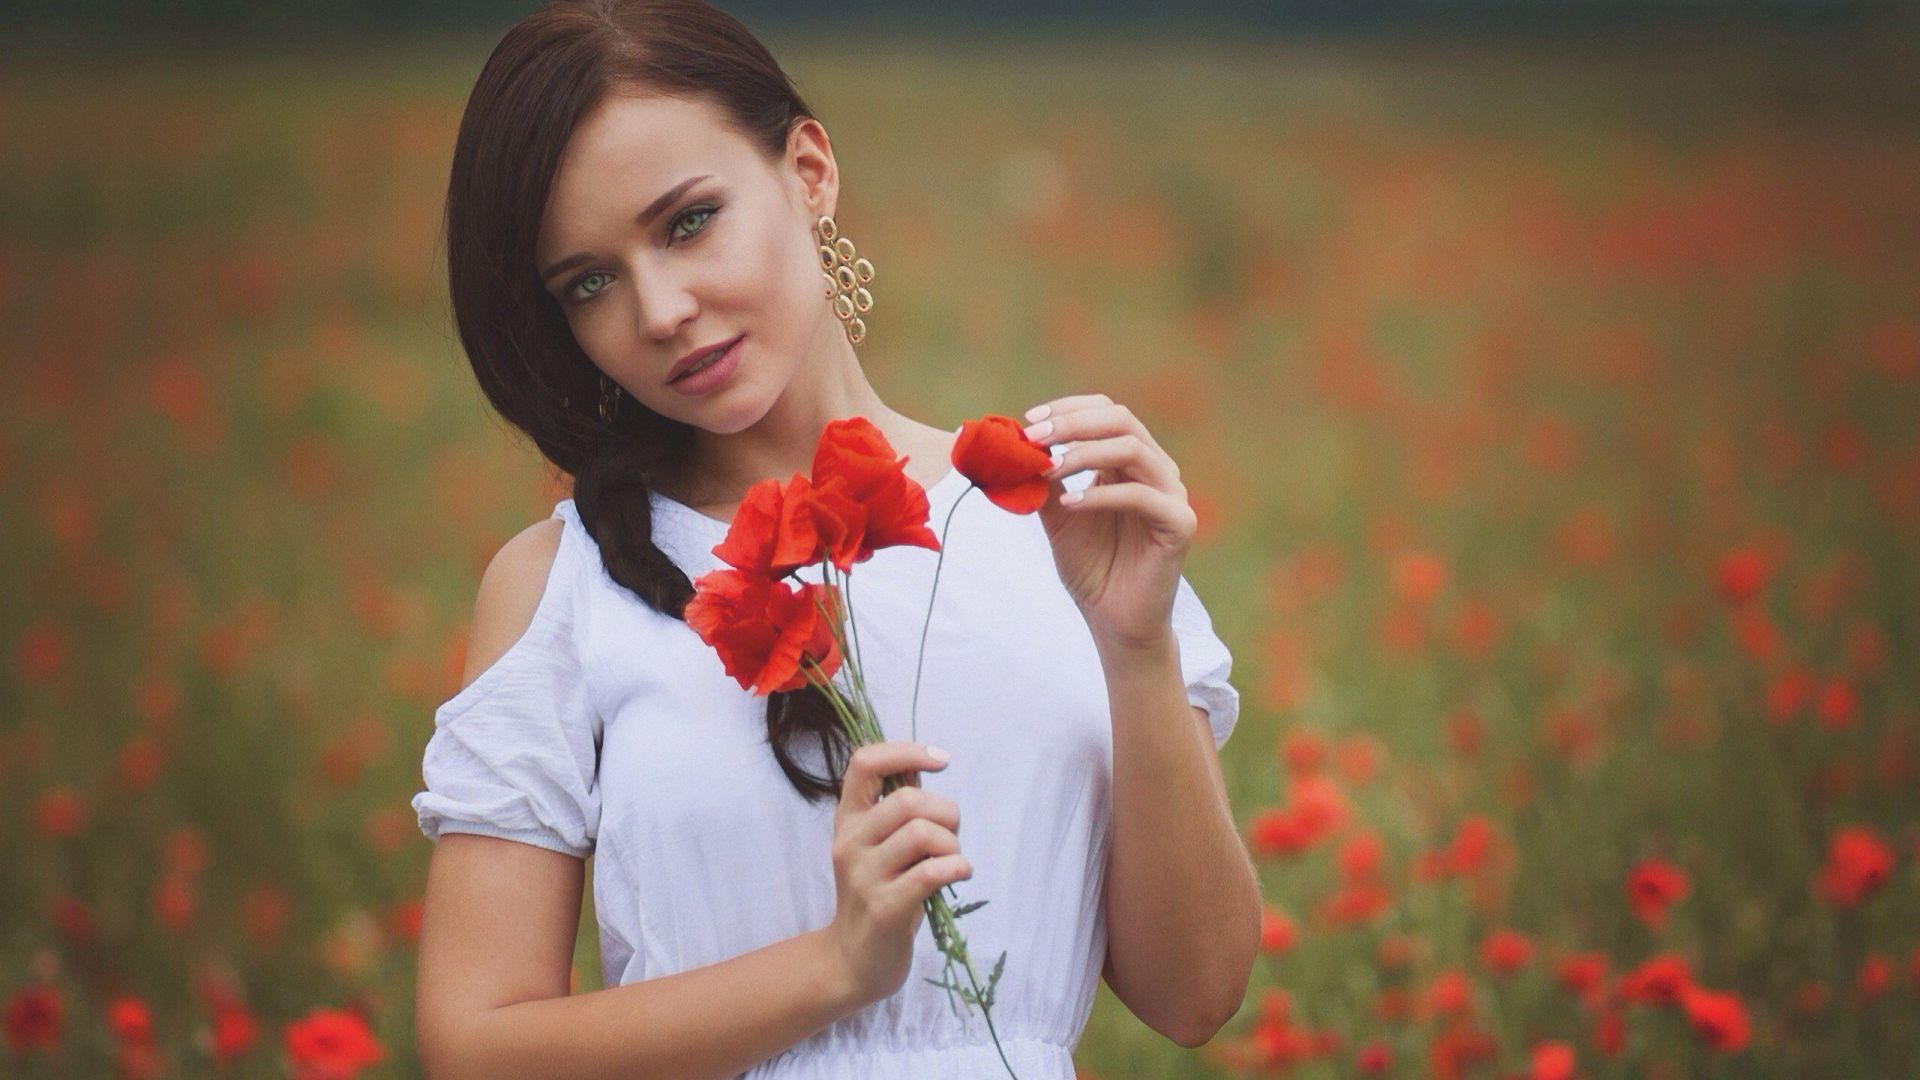 Wallpaper Poppy field, white dress, girl model, outdoor